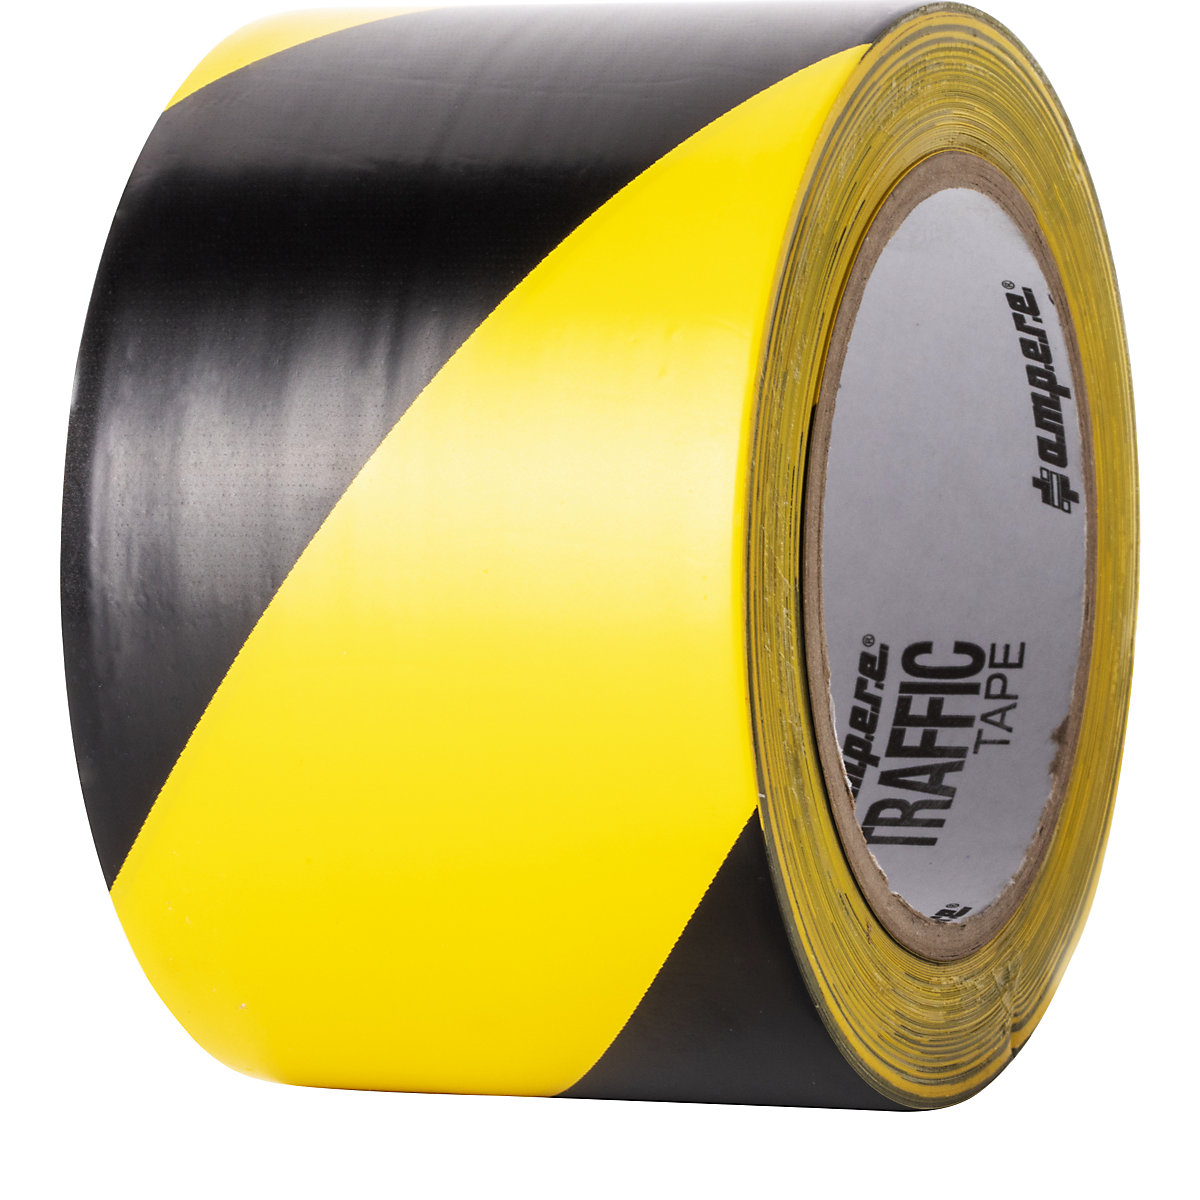 Talni označevalni trak – Ampere, širina 75 mm, rumeno/črne barve-2